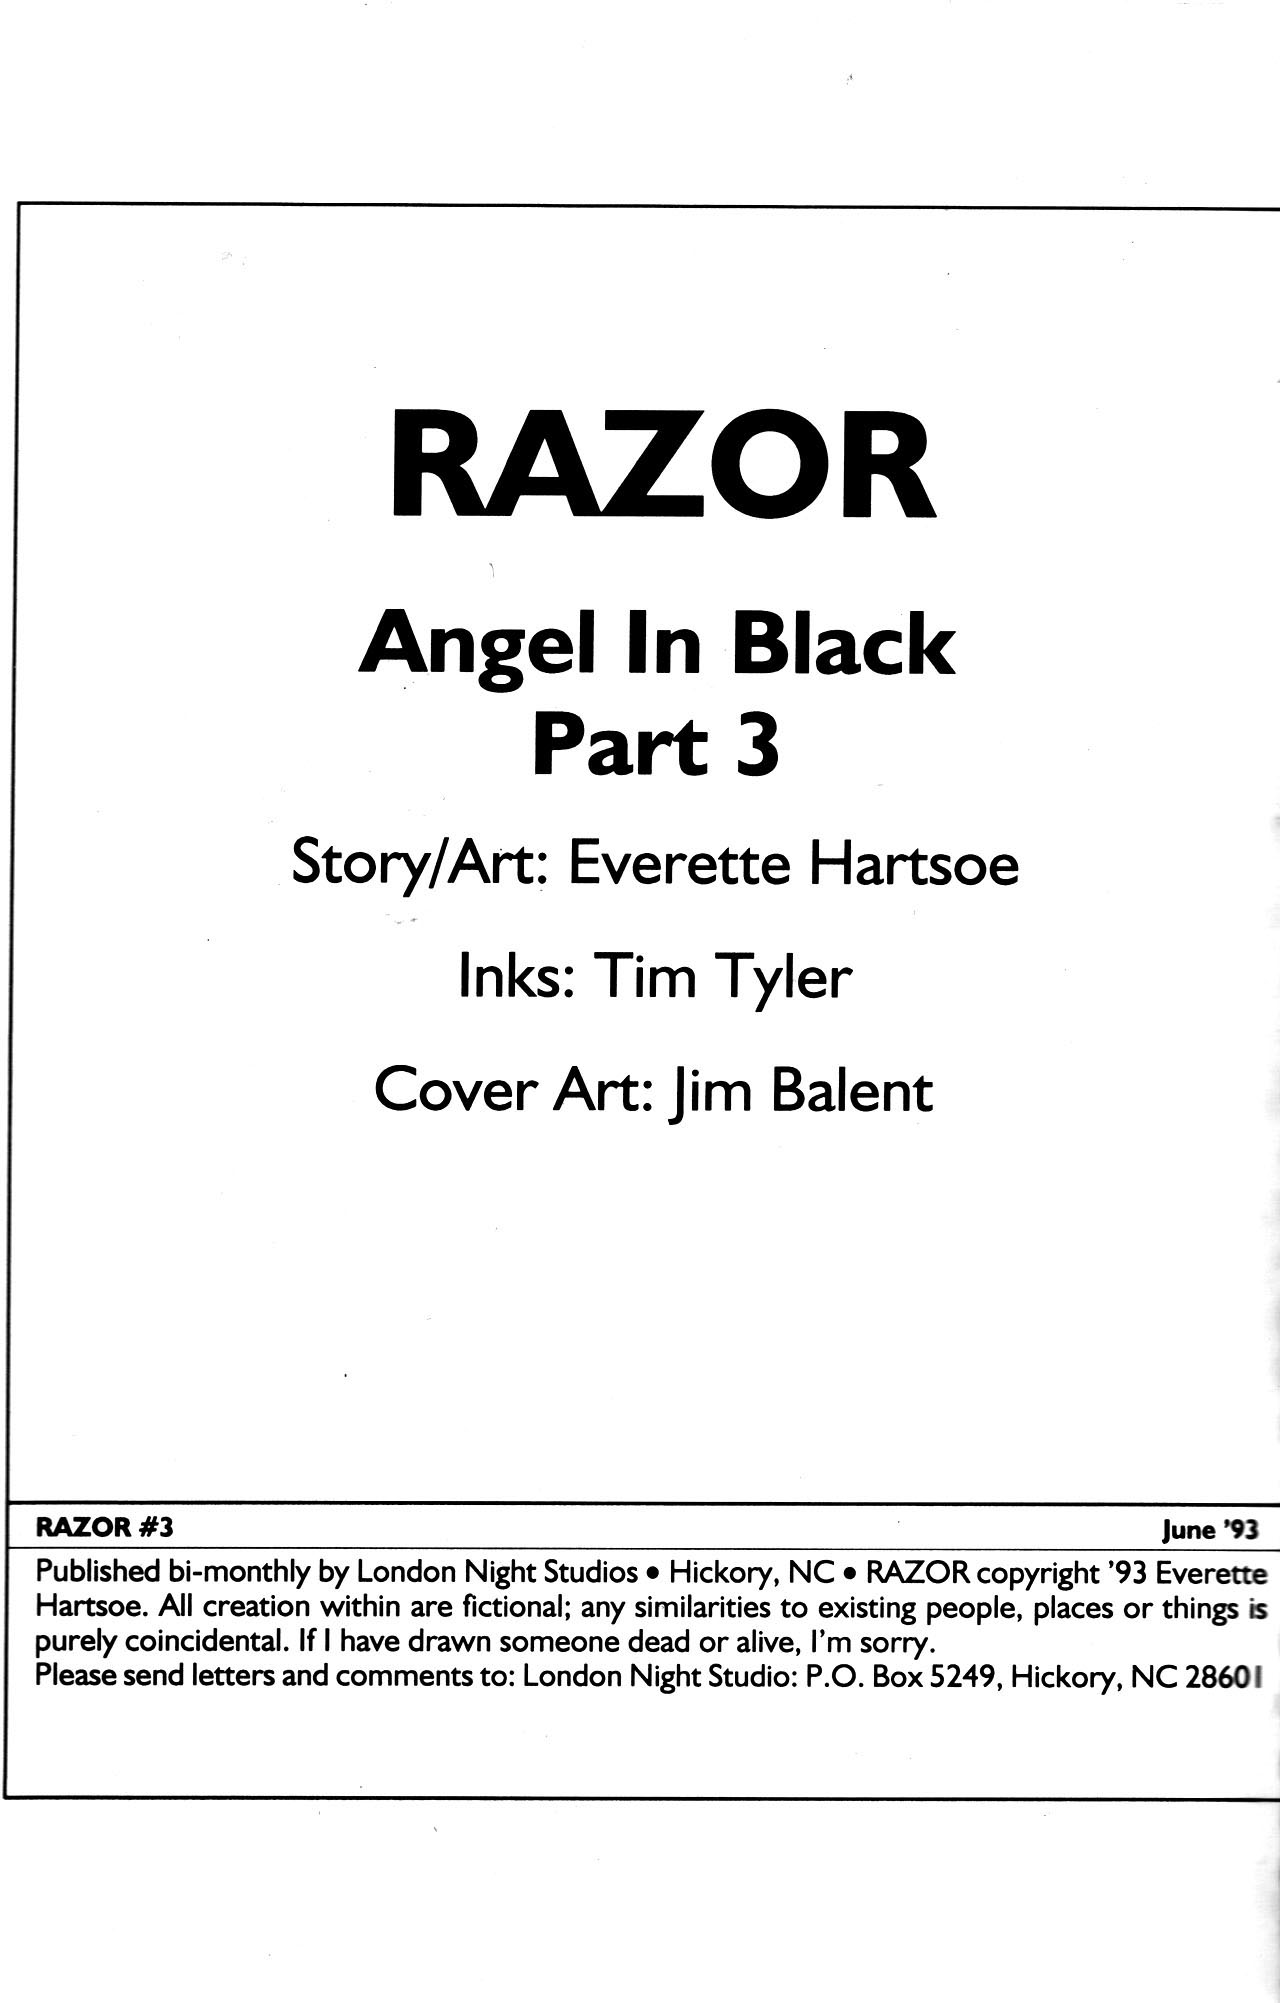 Read online Razor comic -  Issue #3 - 2